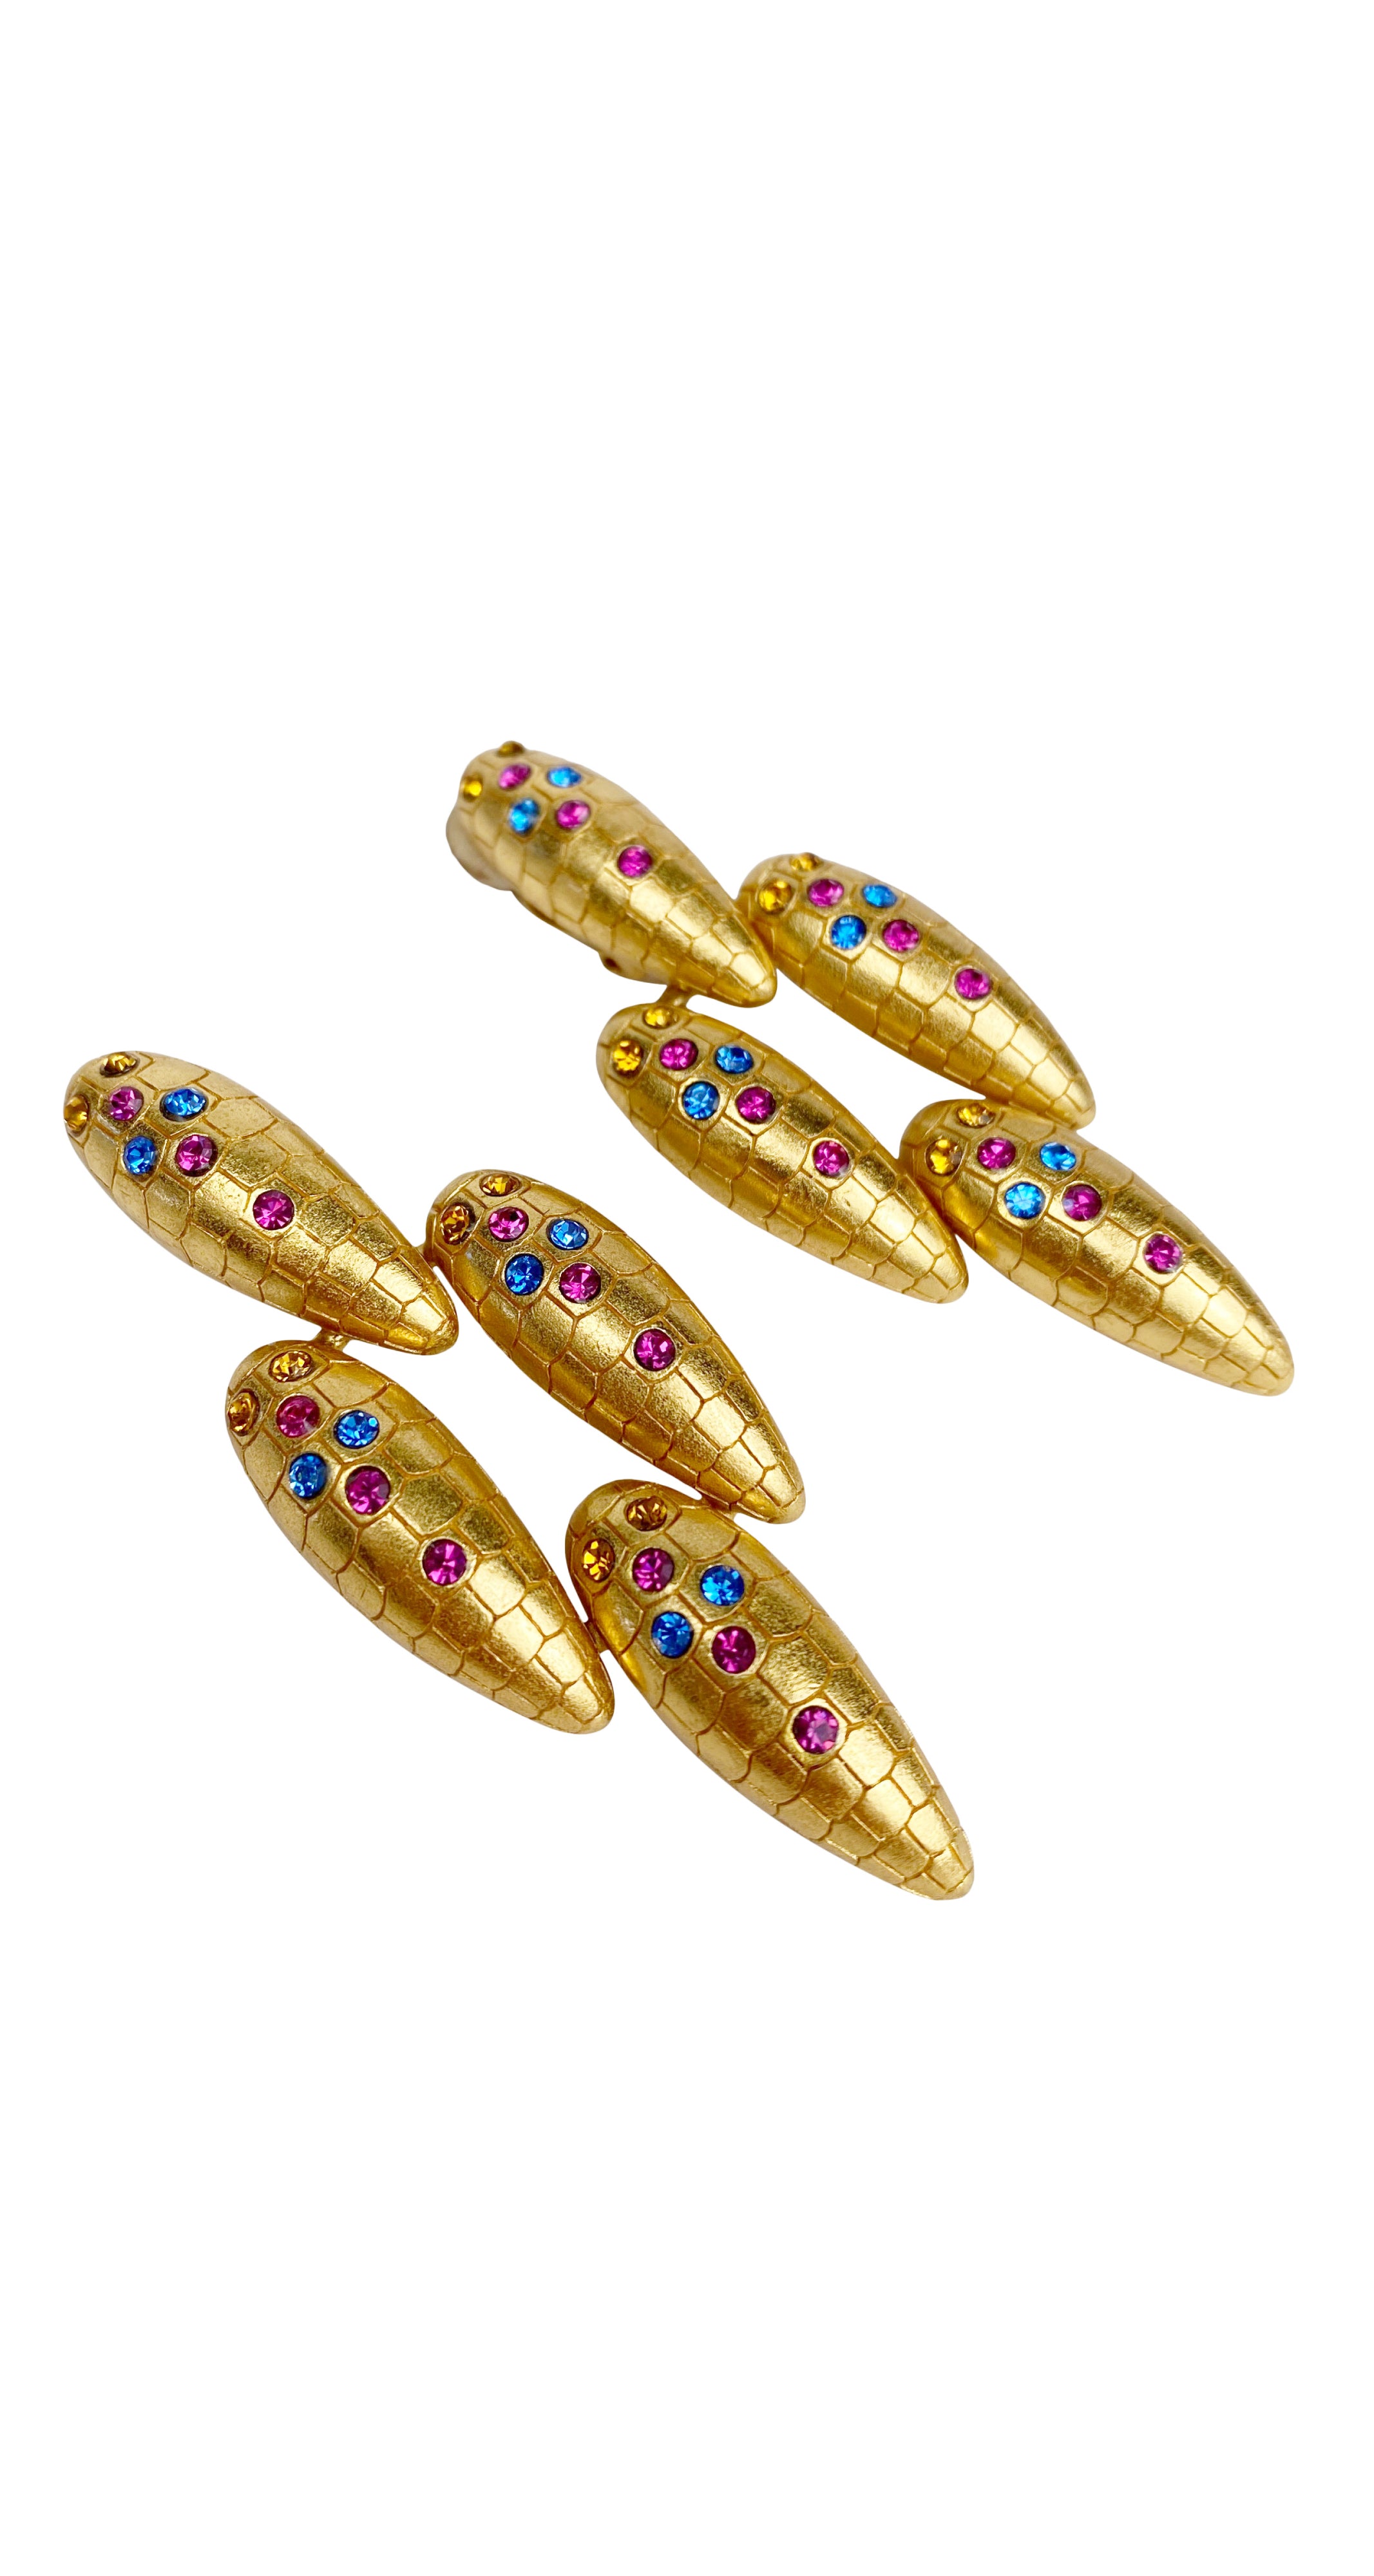 1990s Rhinestone Gold-Tone Clip-On Earrings & Bracelet Set